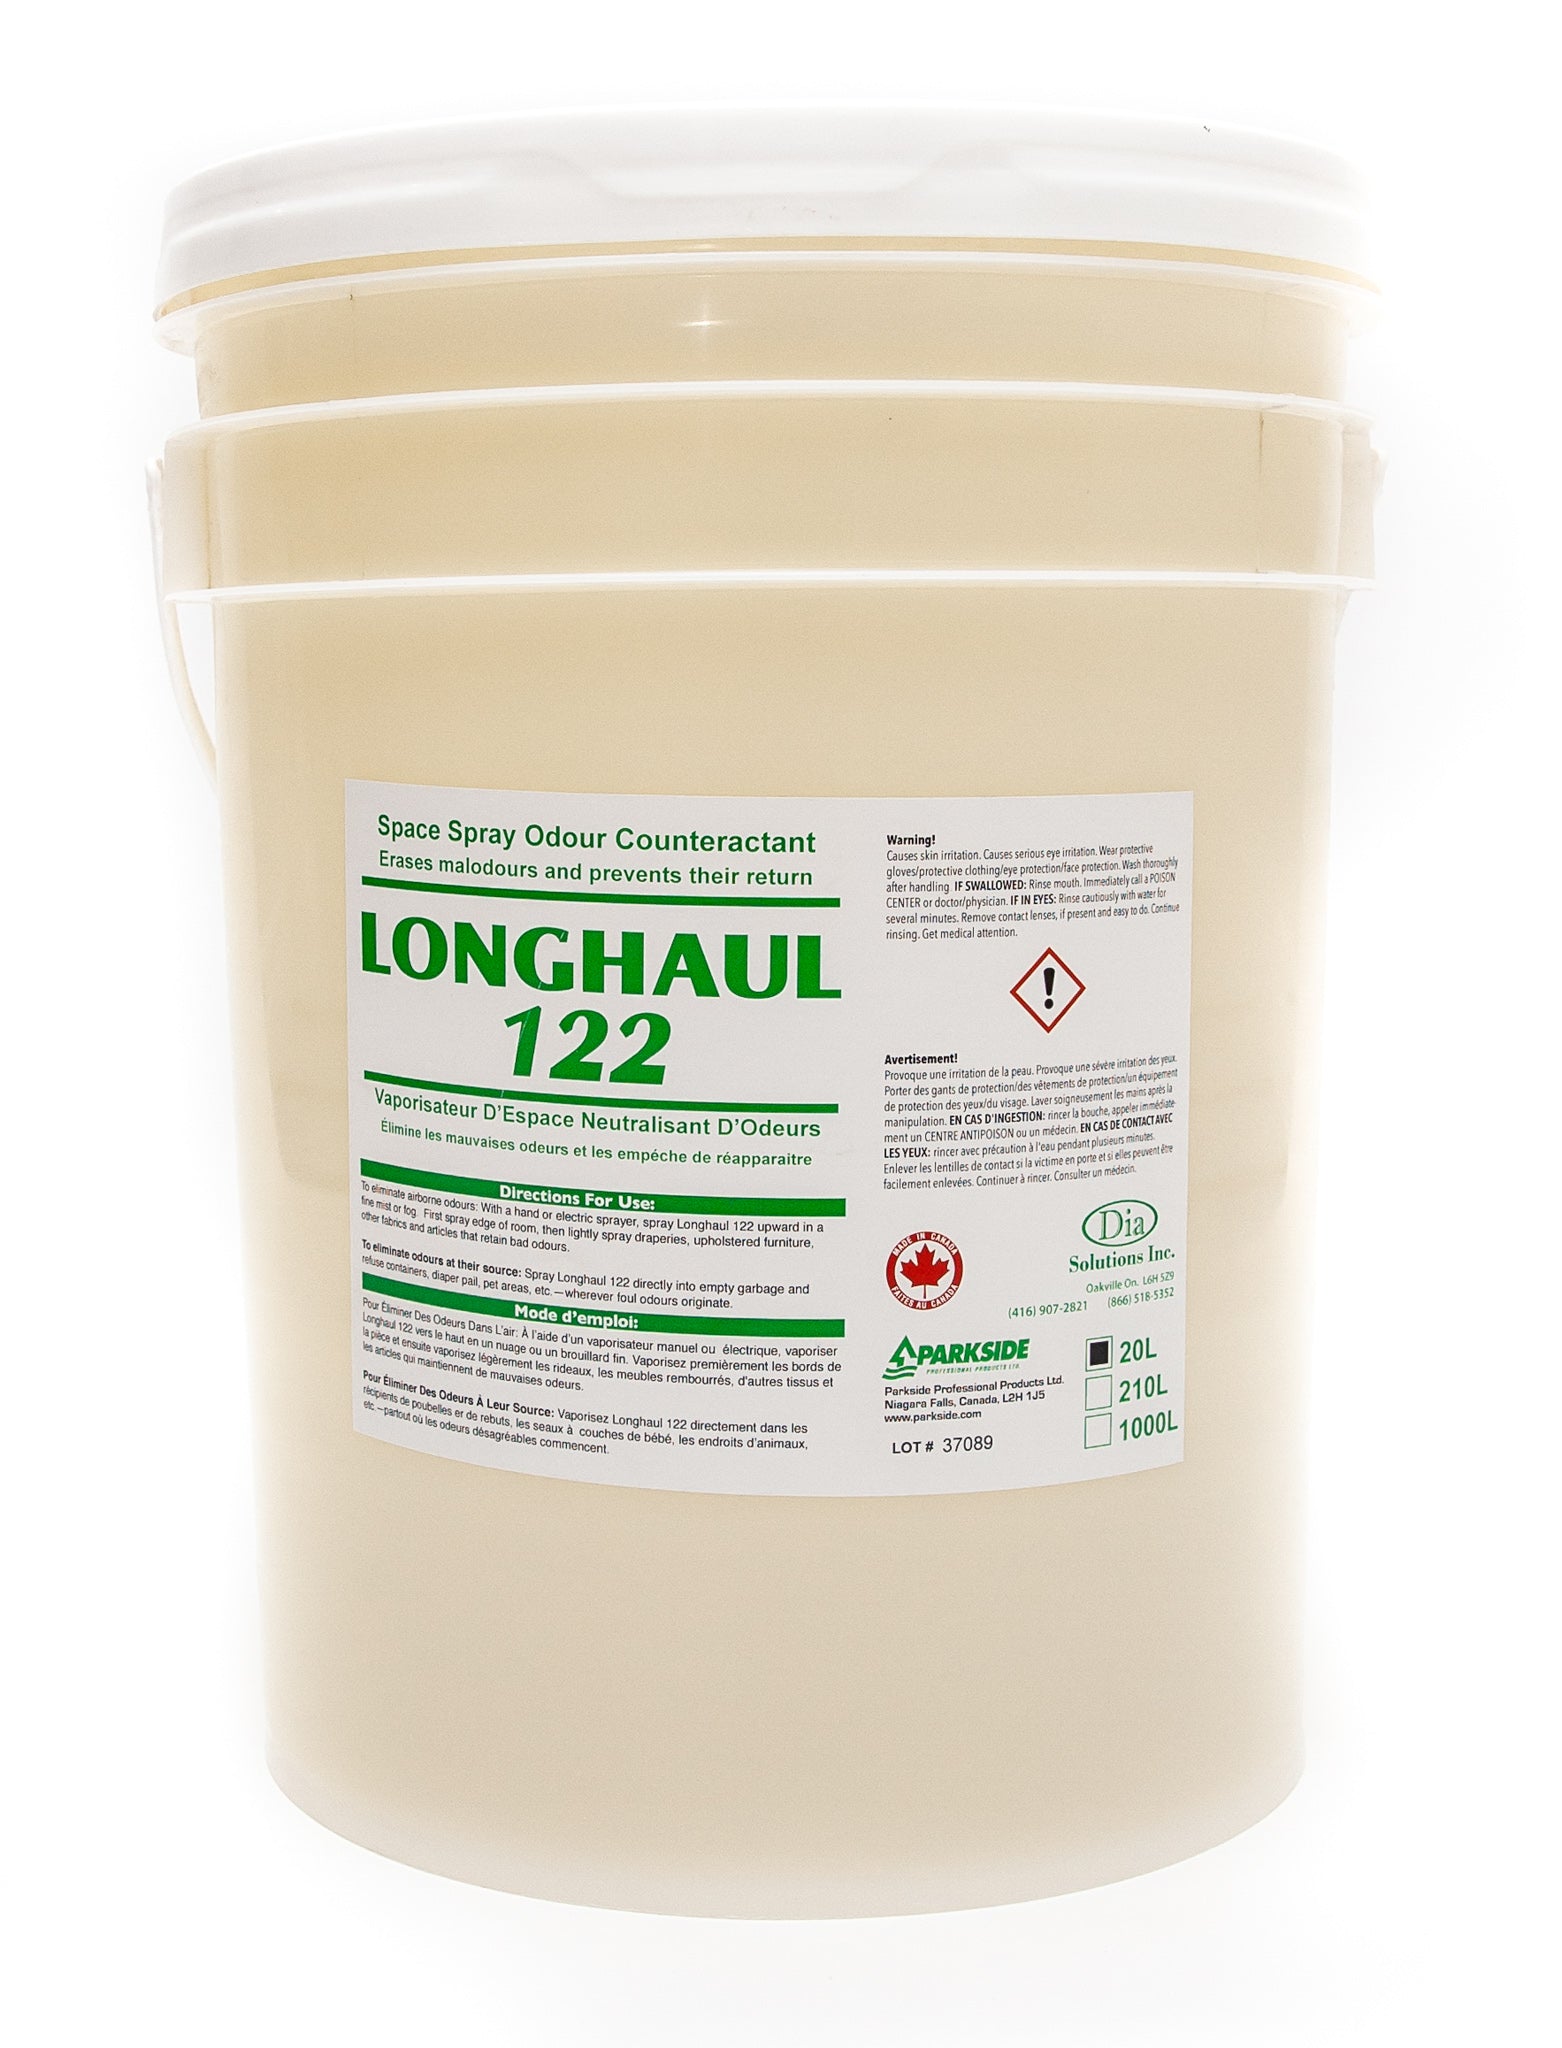 Longhaul 122 - Space Spray Odour Counteractant